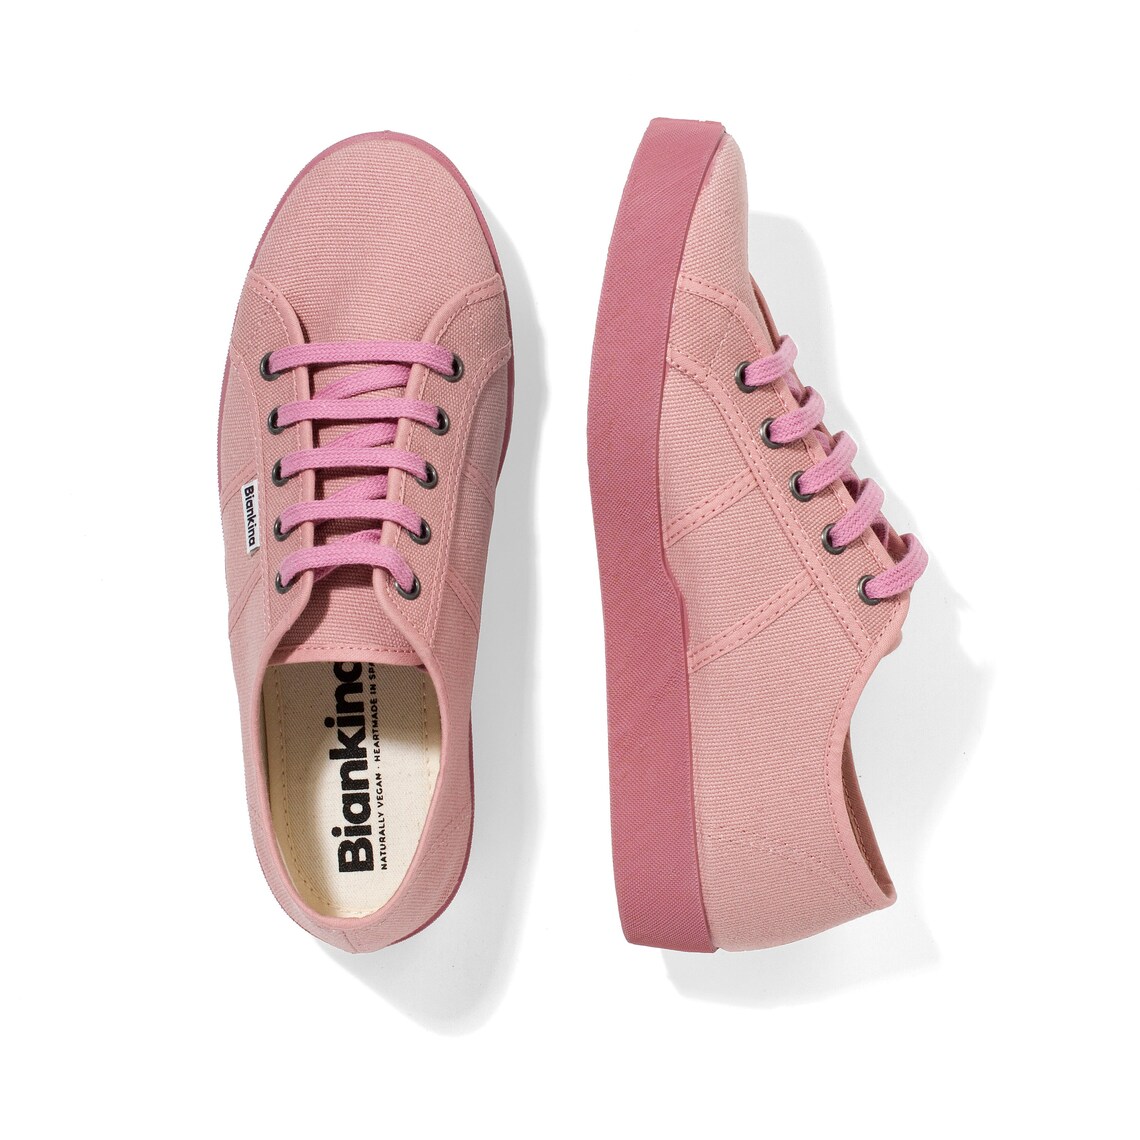 St. Tropez Rose Pink Women's Vegan Canvas Tennis Shoes - Etsy